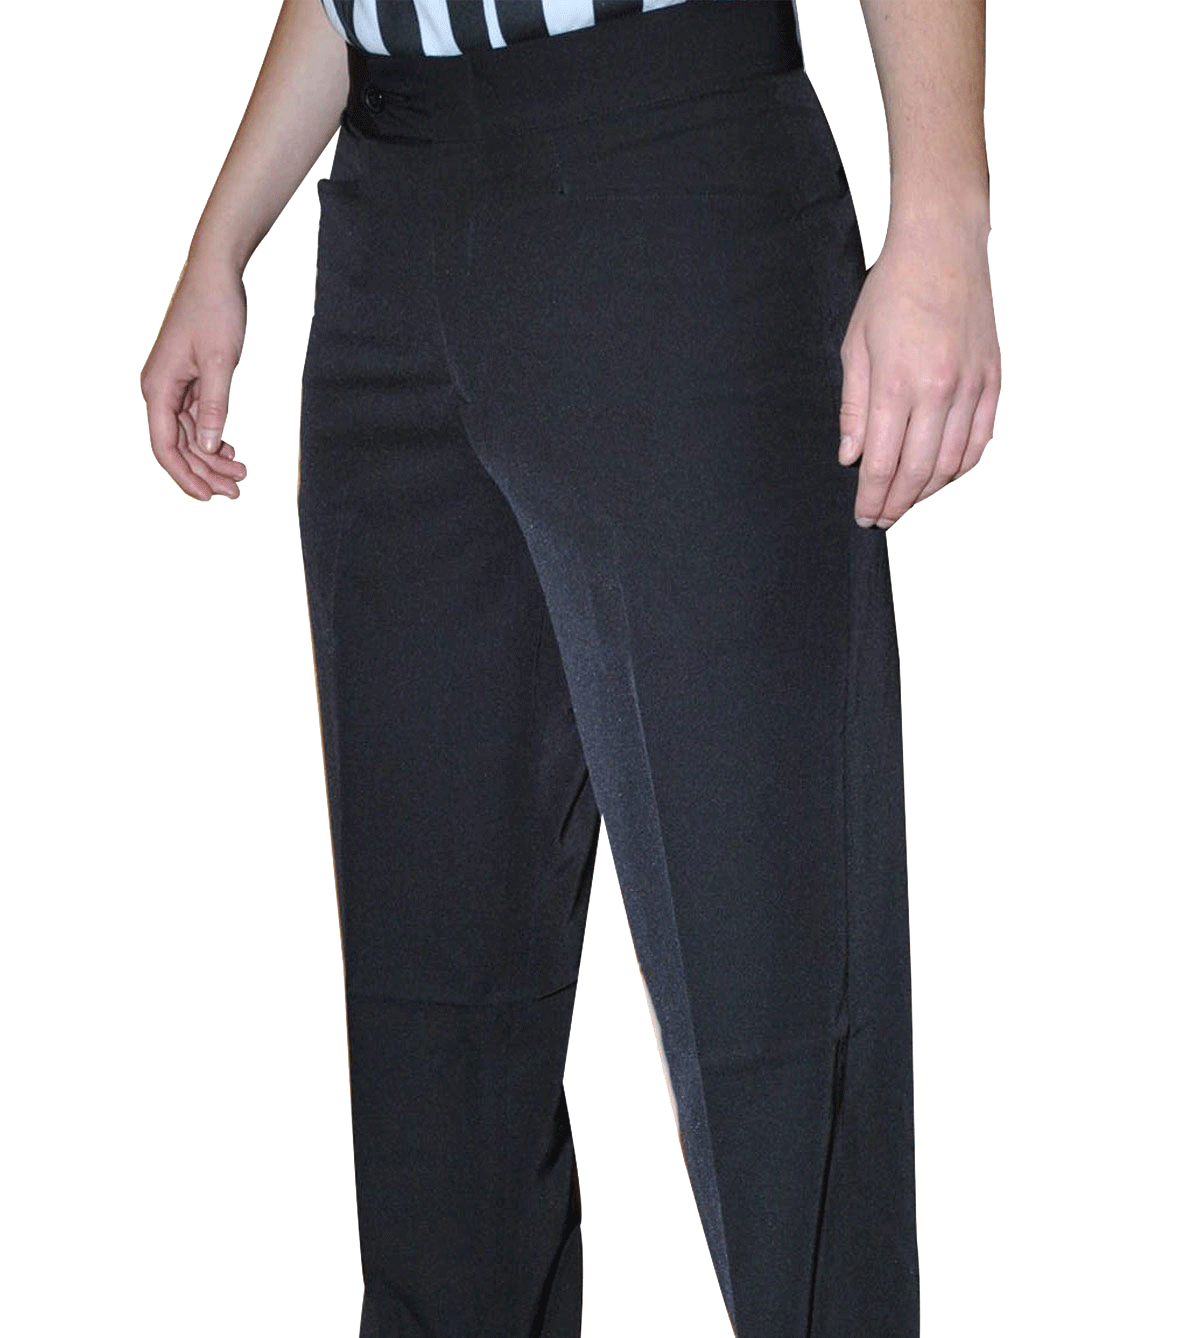 SMITTY Women's 4-Way Stretch Flat Front Pant w/Western Pockets